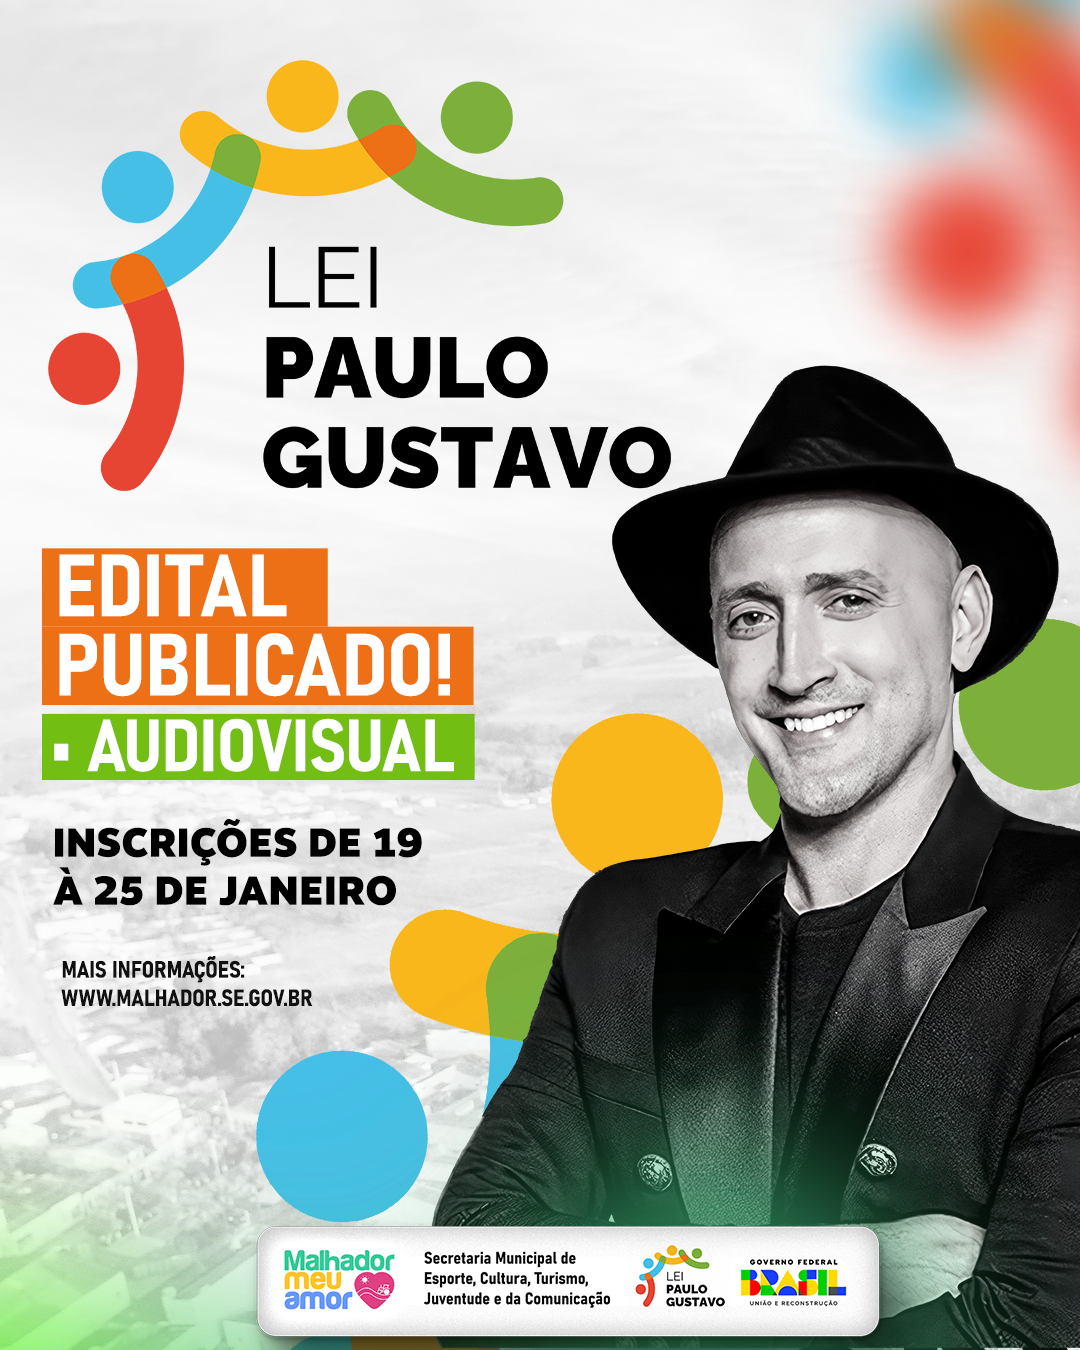 Está disponível o Chamamento Público para Fomento de Ações Culturais na área Audiovisual, em cumprimento da Lei Paulo Gustavo